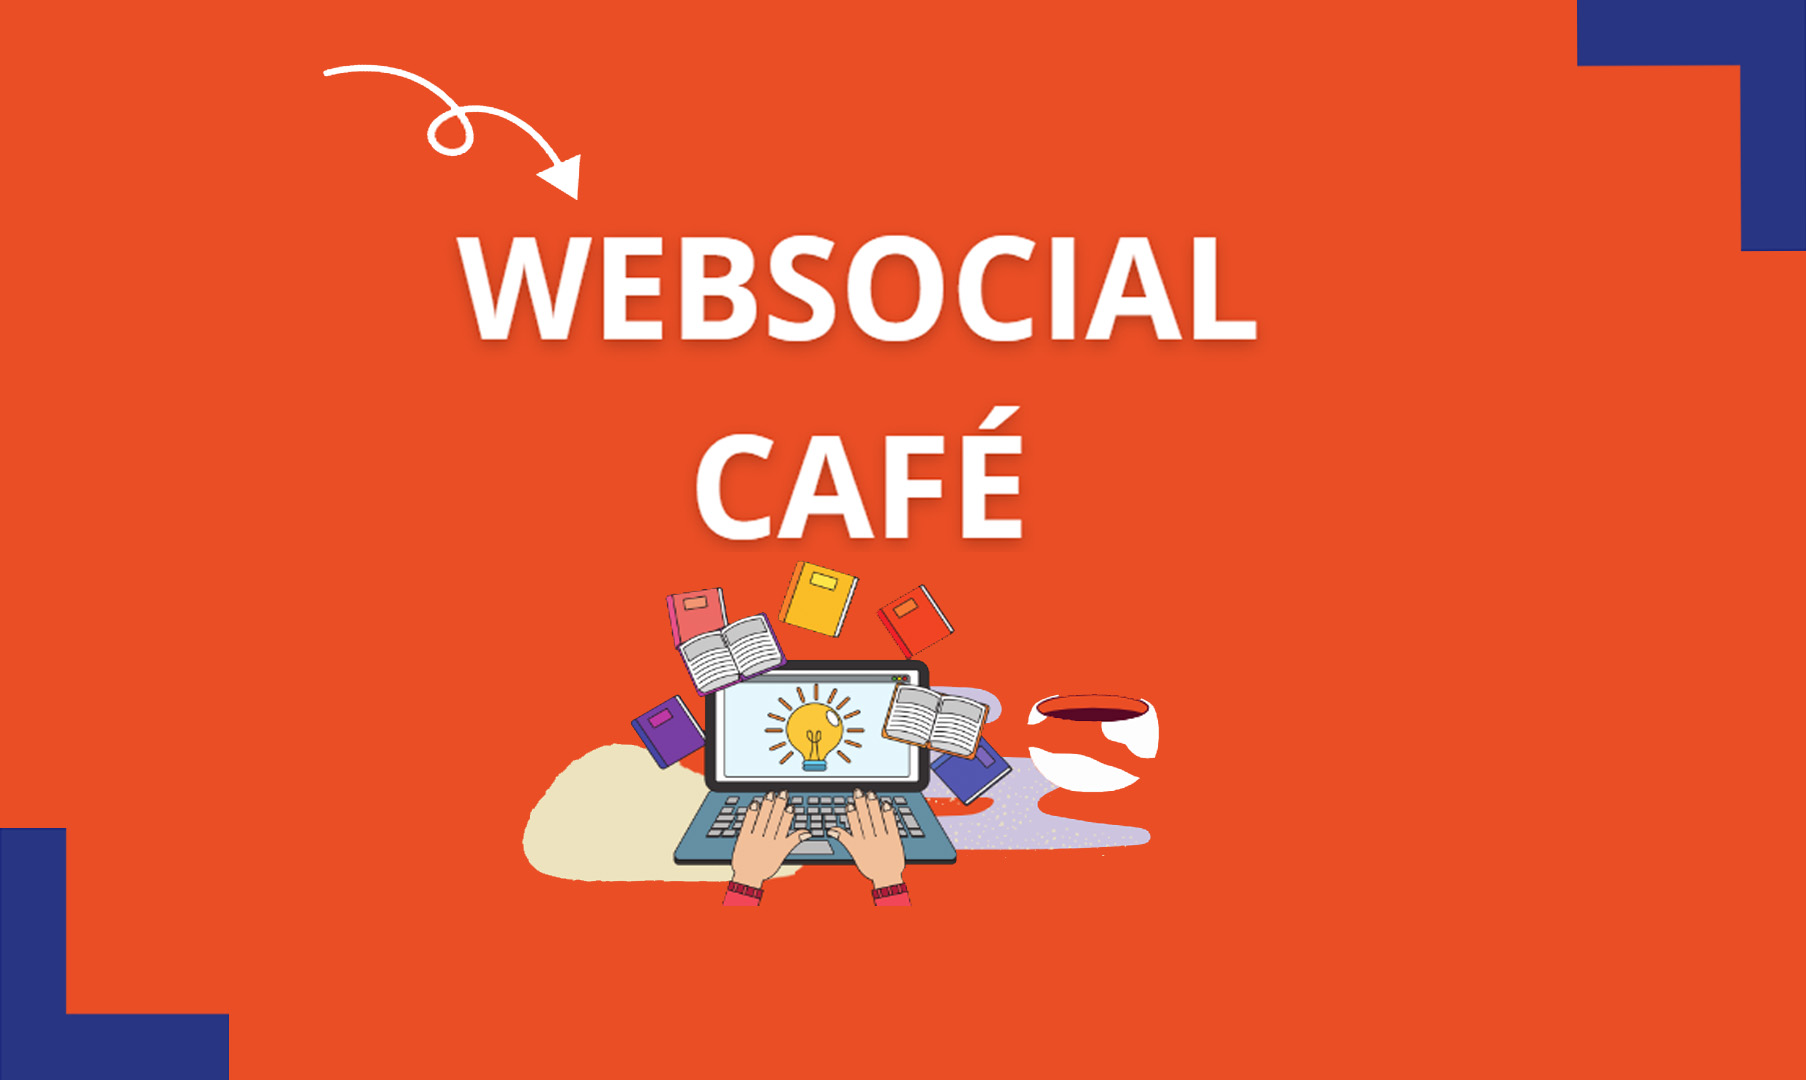 Websocial cafés